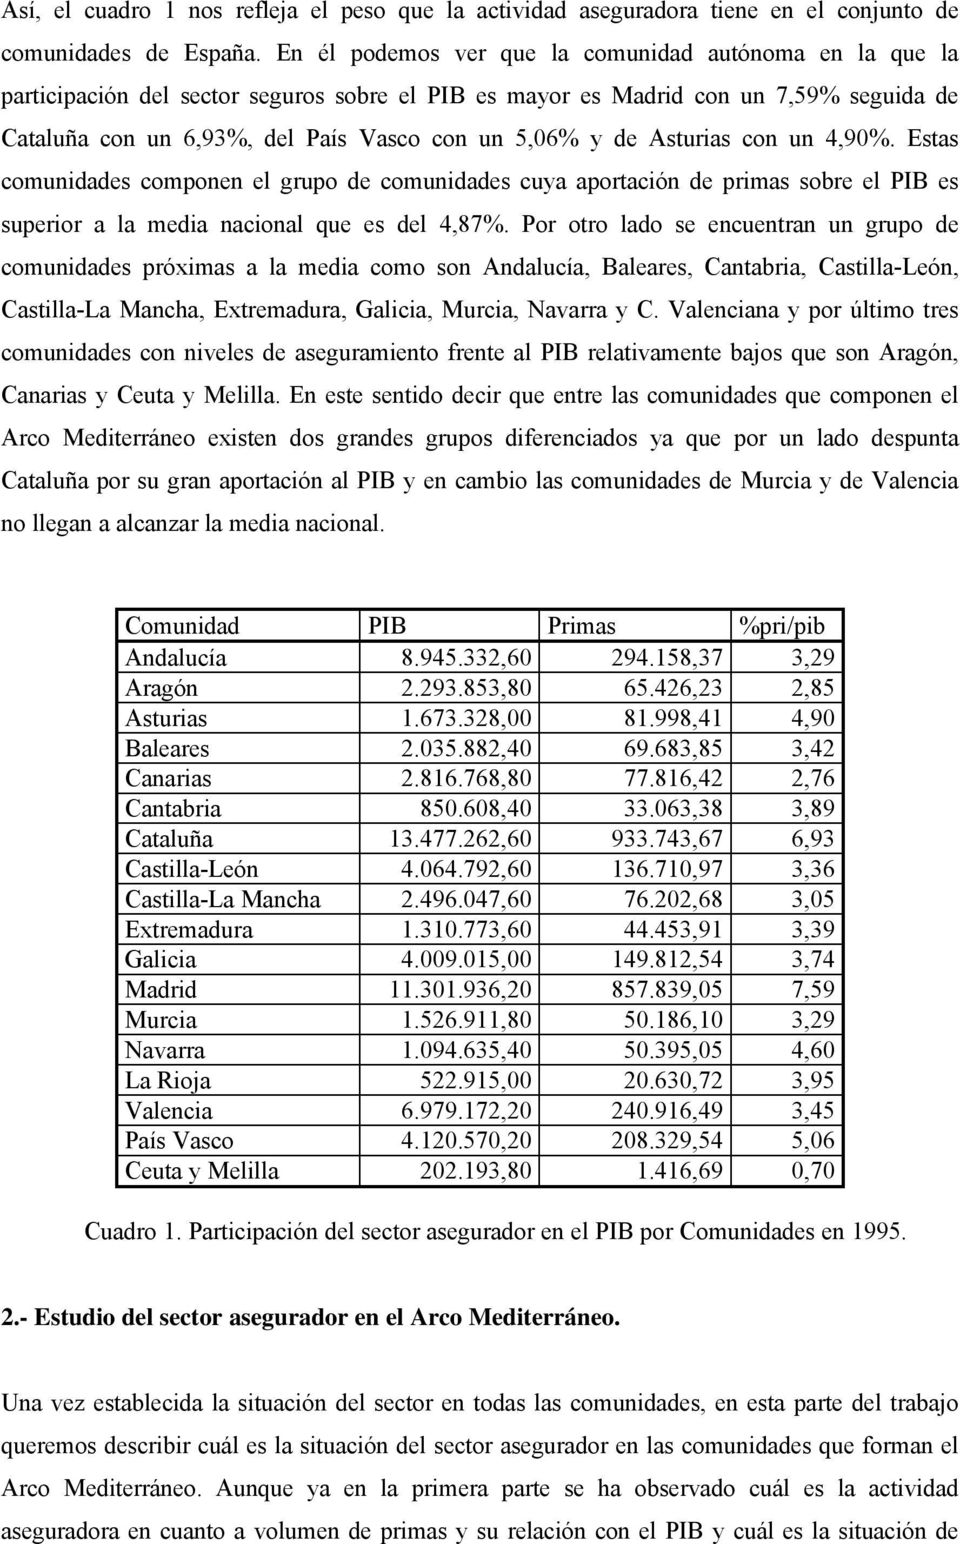 de Asturias con un 4,90%. Estas comunidades componen el grupo de comunidades cuya aportación de primas sobre el PIB es superior a la media nacional que es del 4,87%.